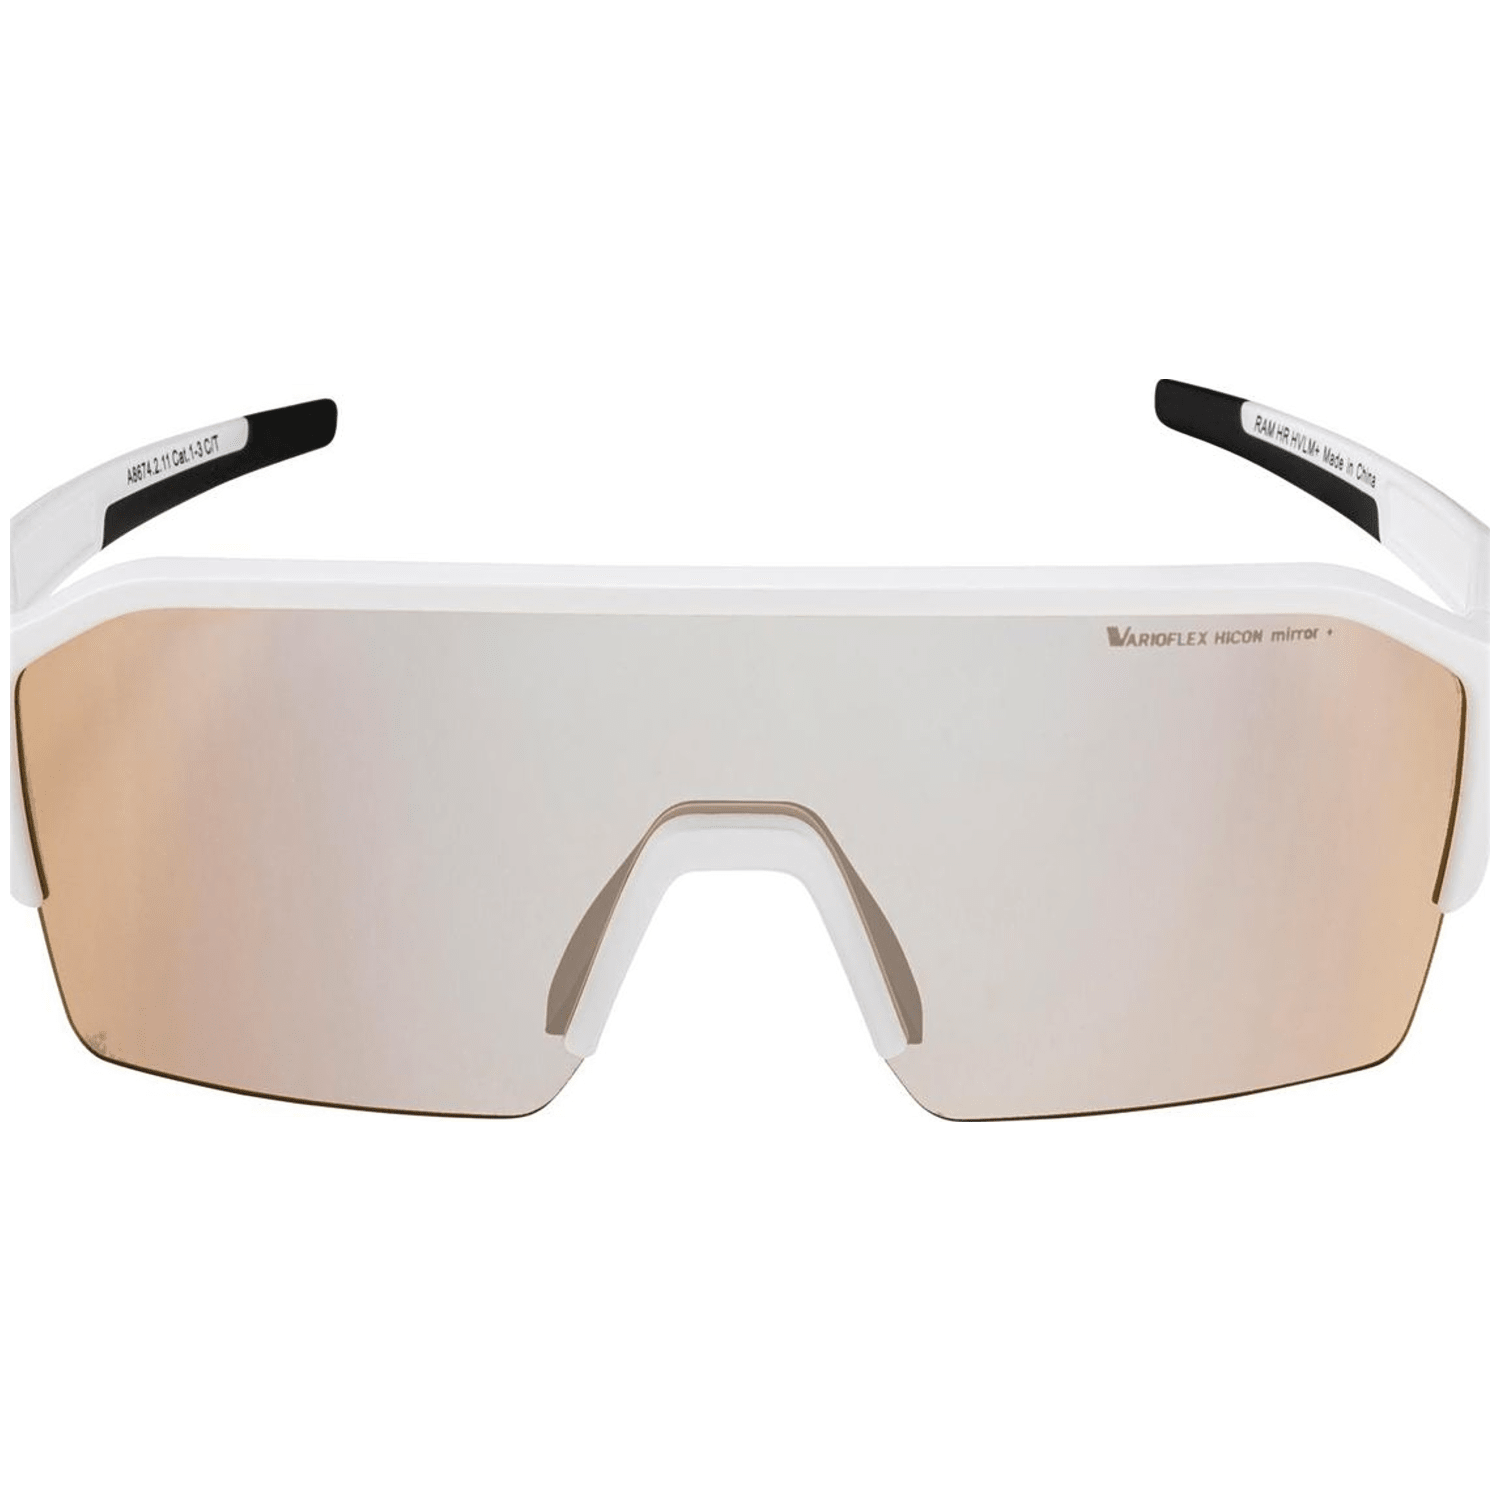 Alpina Ram HR Q-Lite V Sonnenbrille Unisex